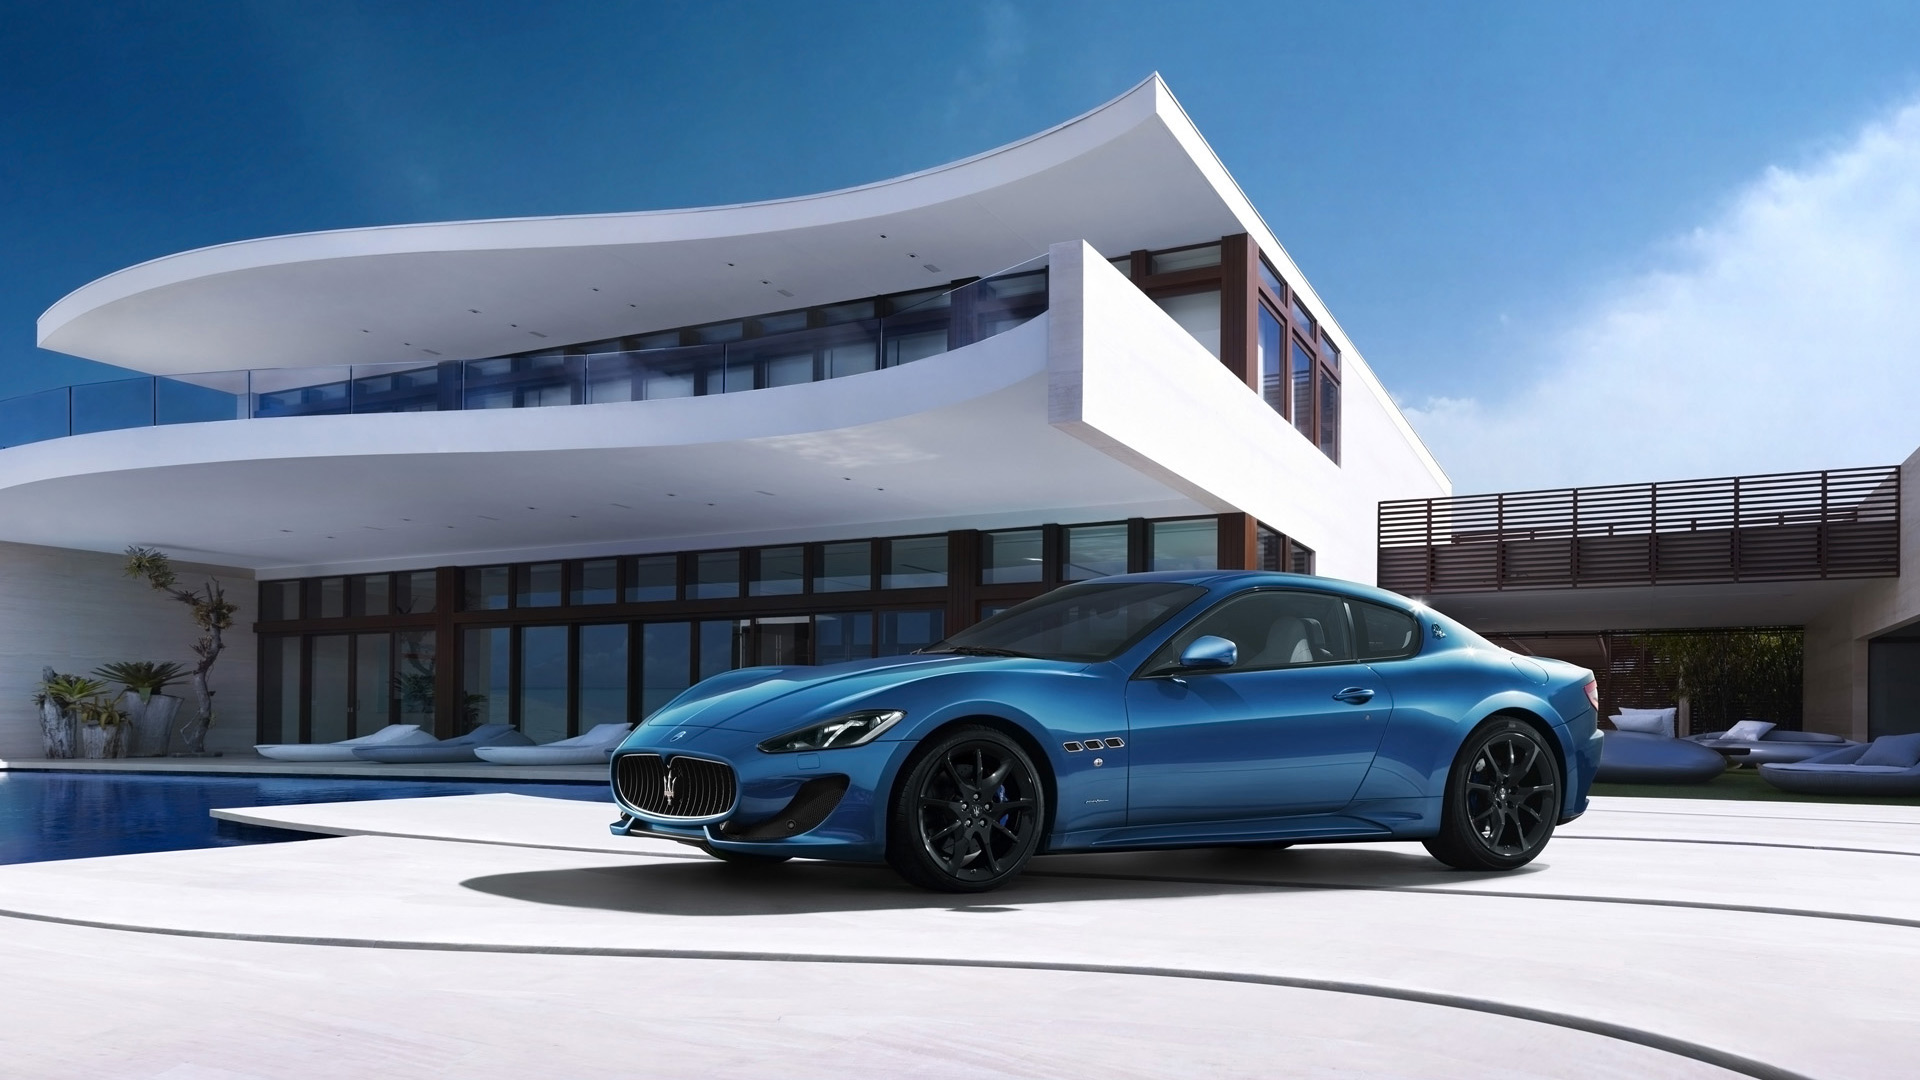  2013 Maserati GranTurismo Sport Wallpaper.